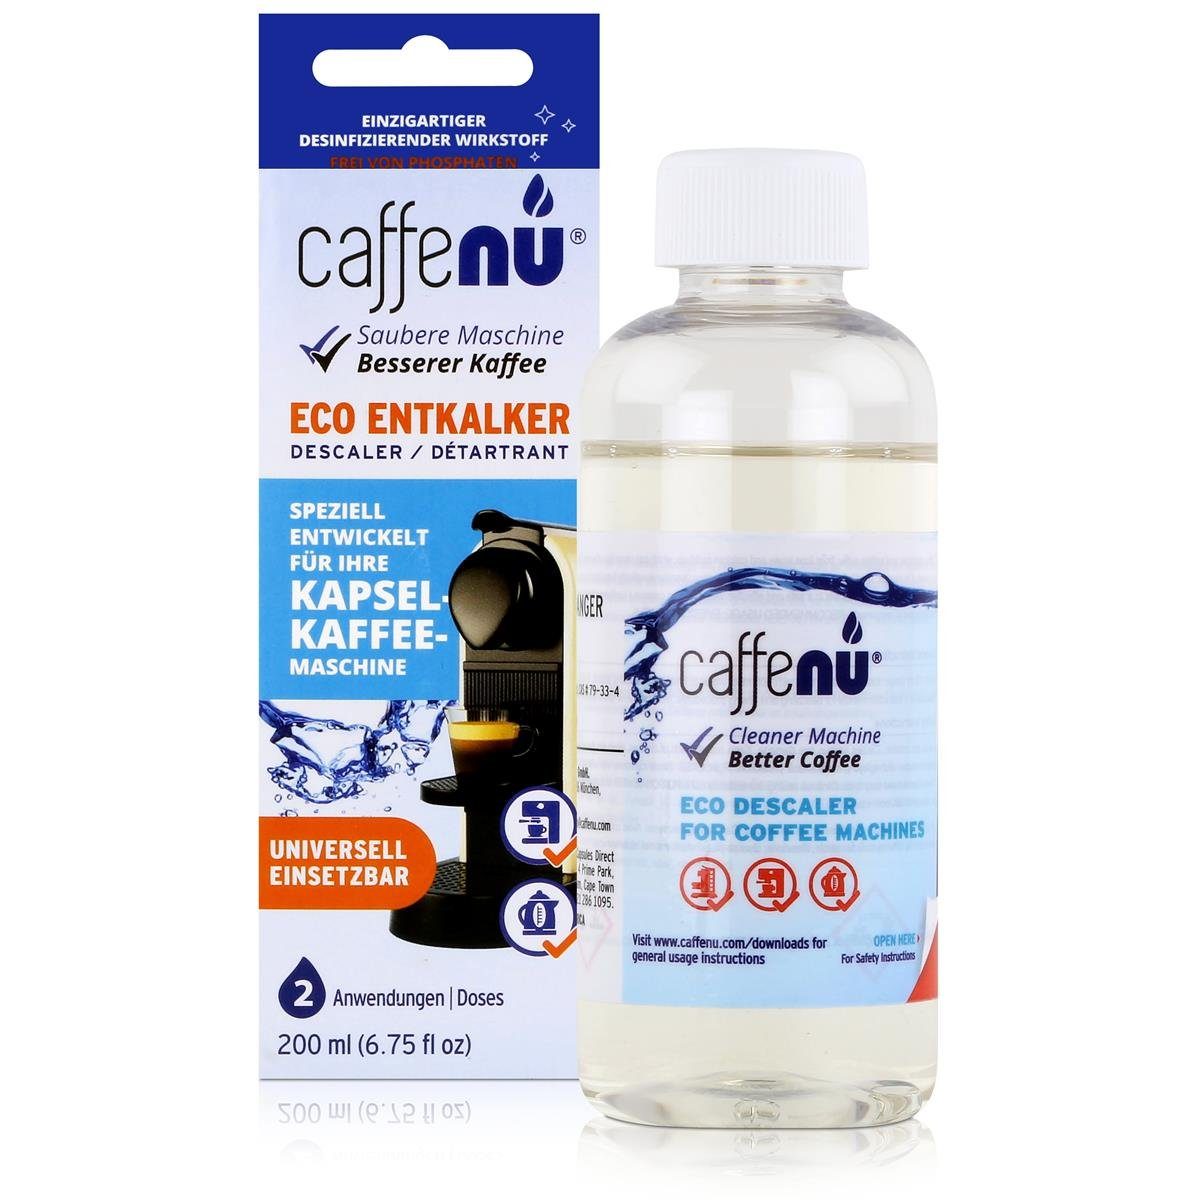 Kapsel-Kaffee-Maschinen (3e für Caffenu Eco Entkalker caffenu 200ml - Speziell Entkalker